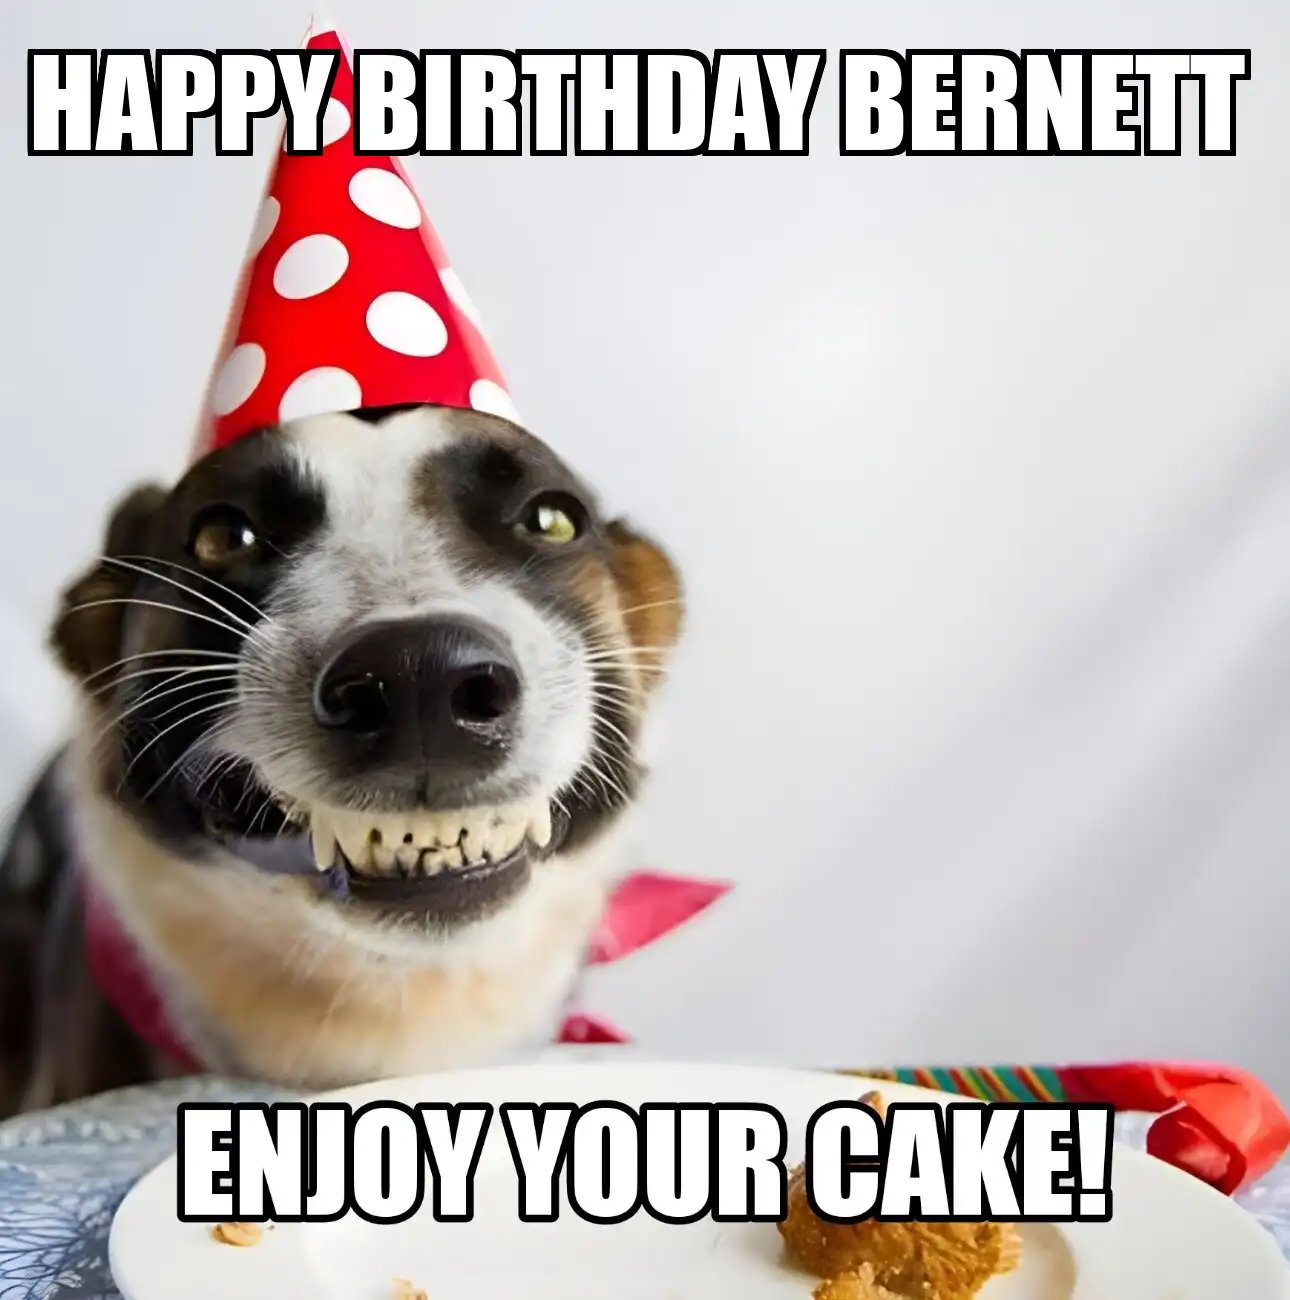 Happy Birthday Bernett Enjoy Your Cake Dog Meme